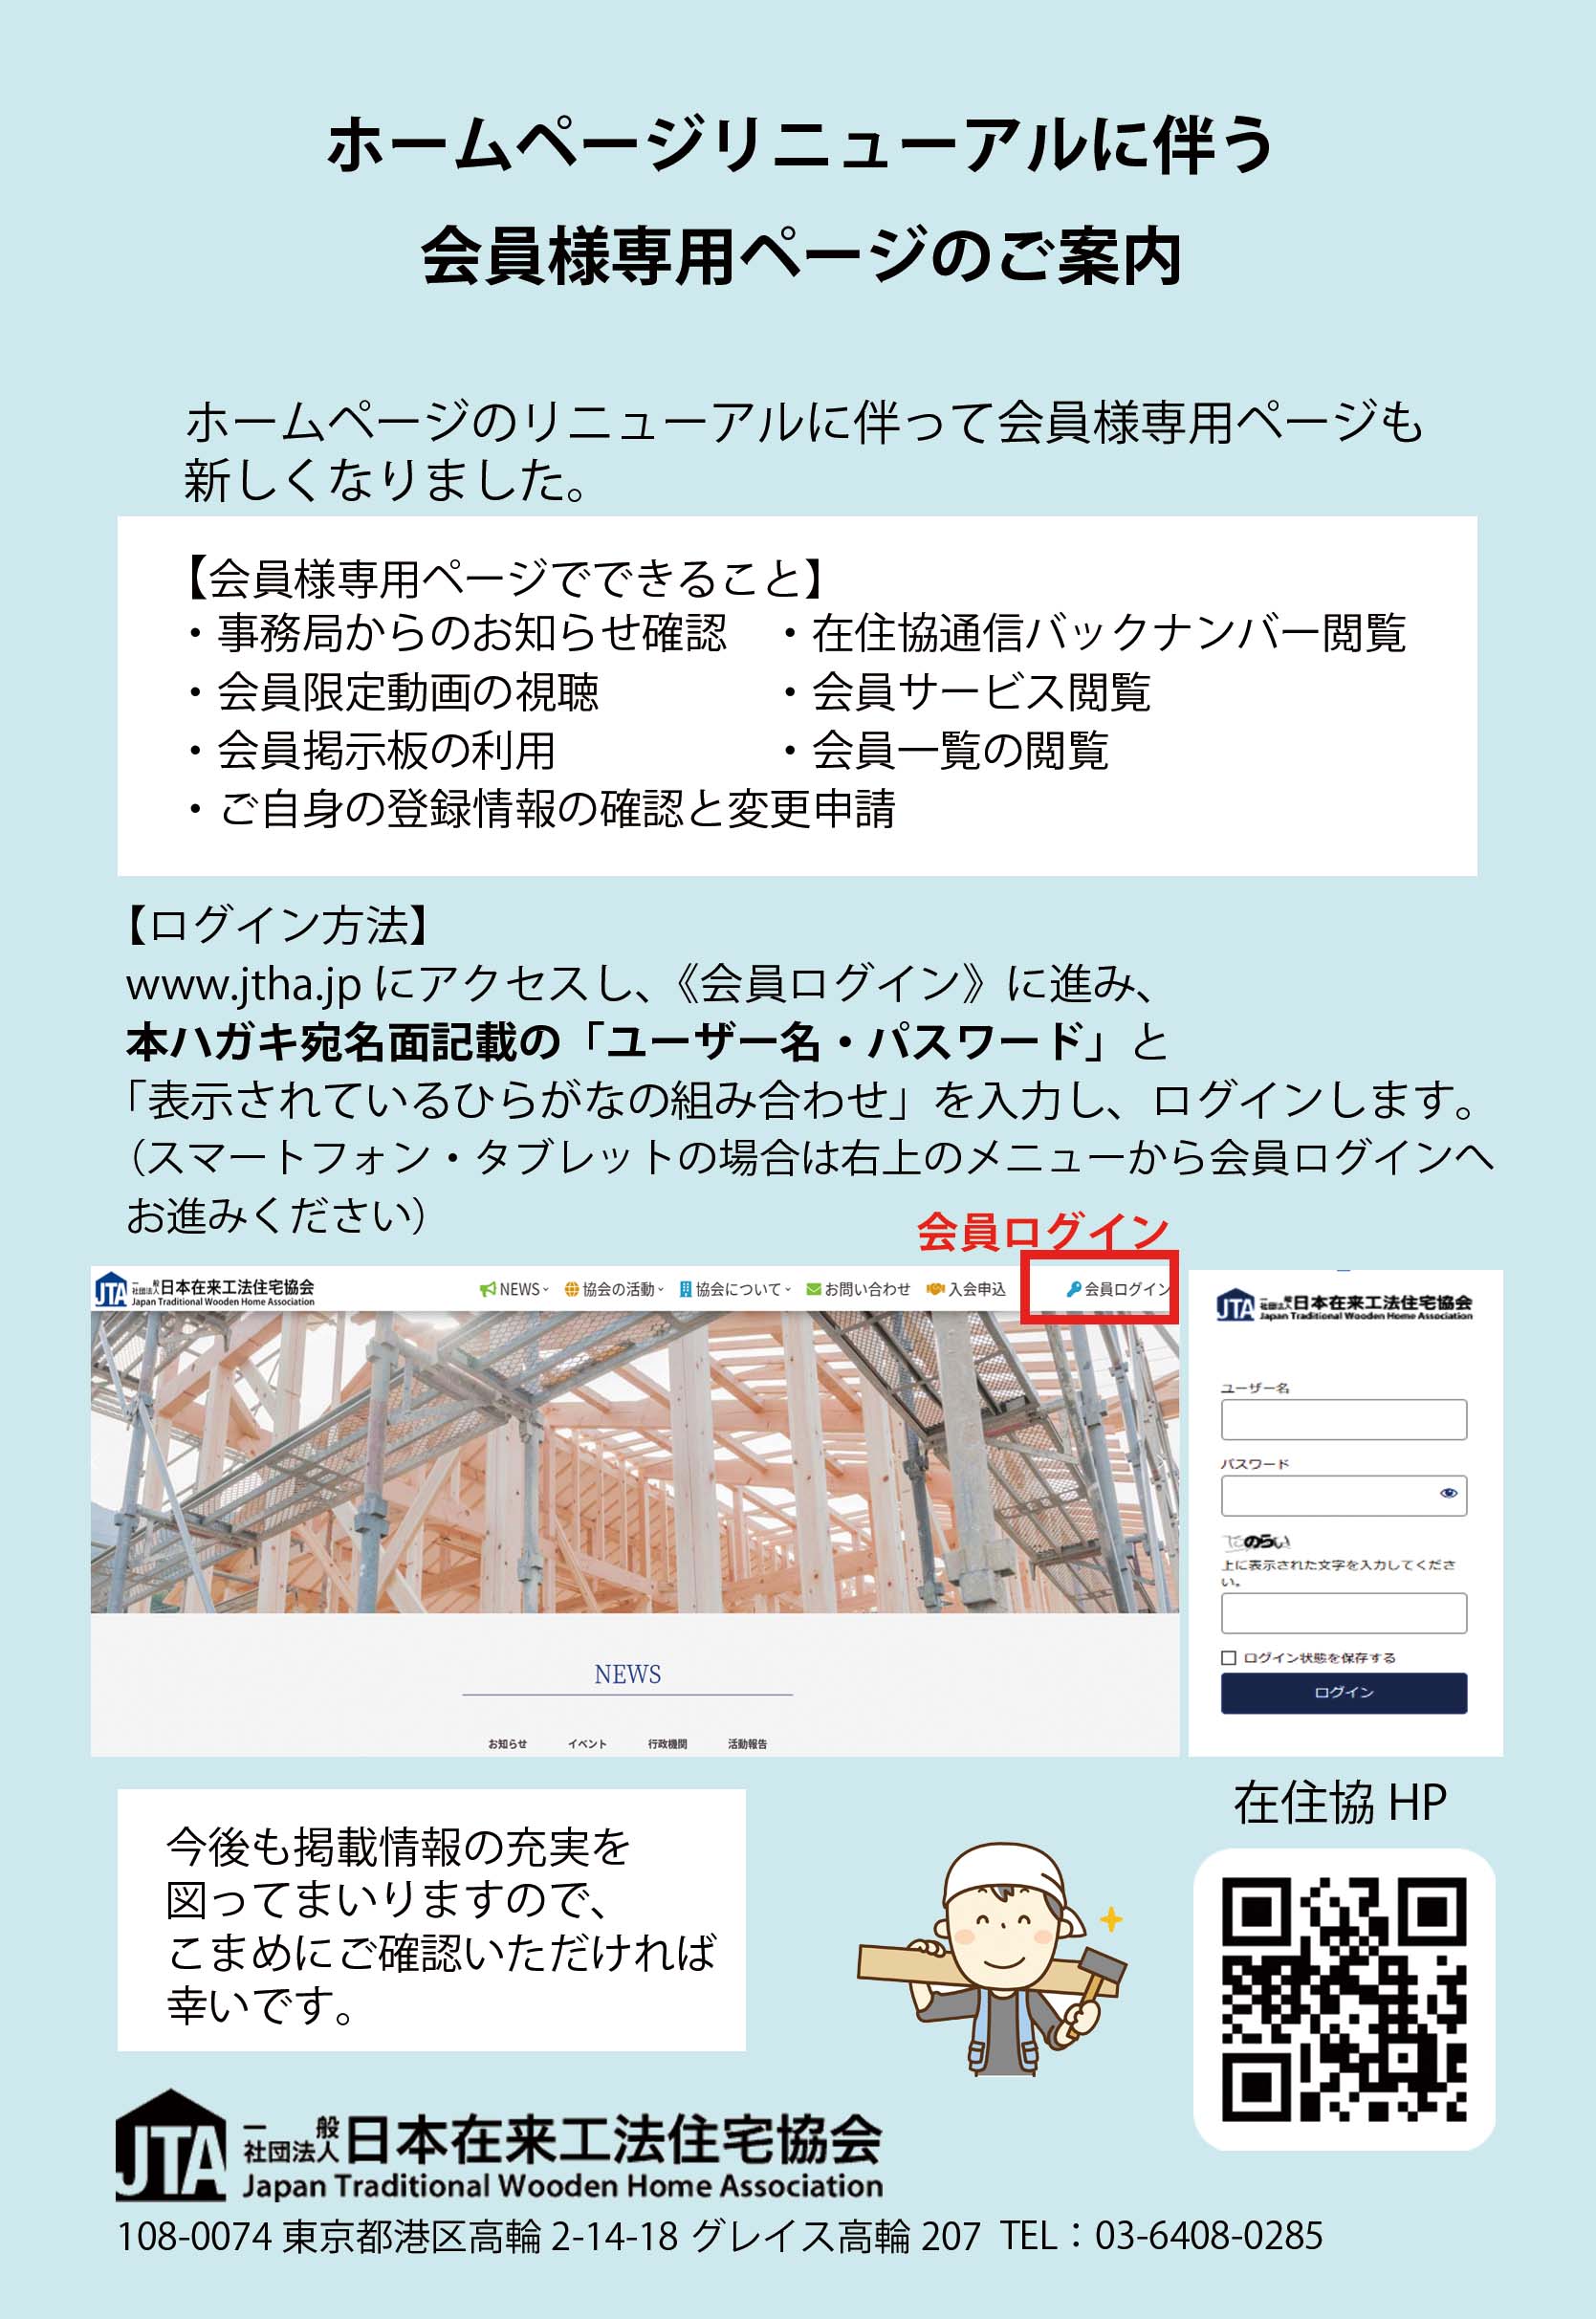 会員様専用ページへのログインについて | 一般社団法人 日本在来工法